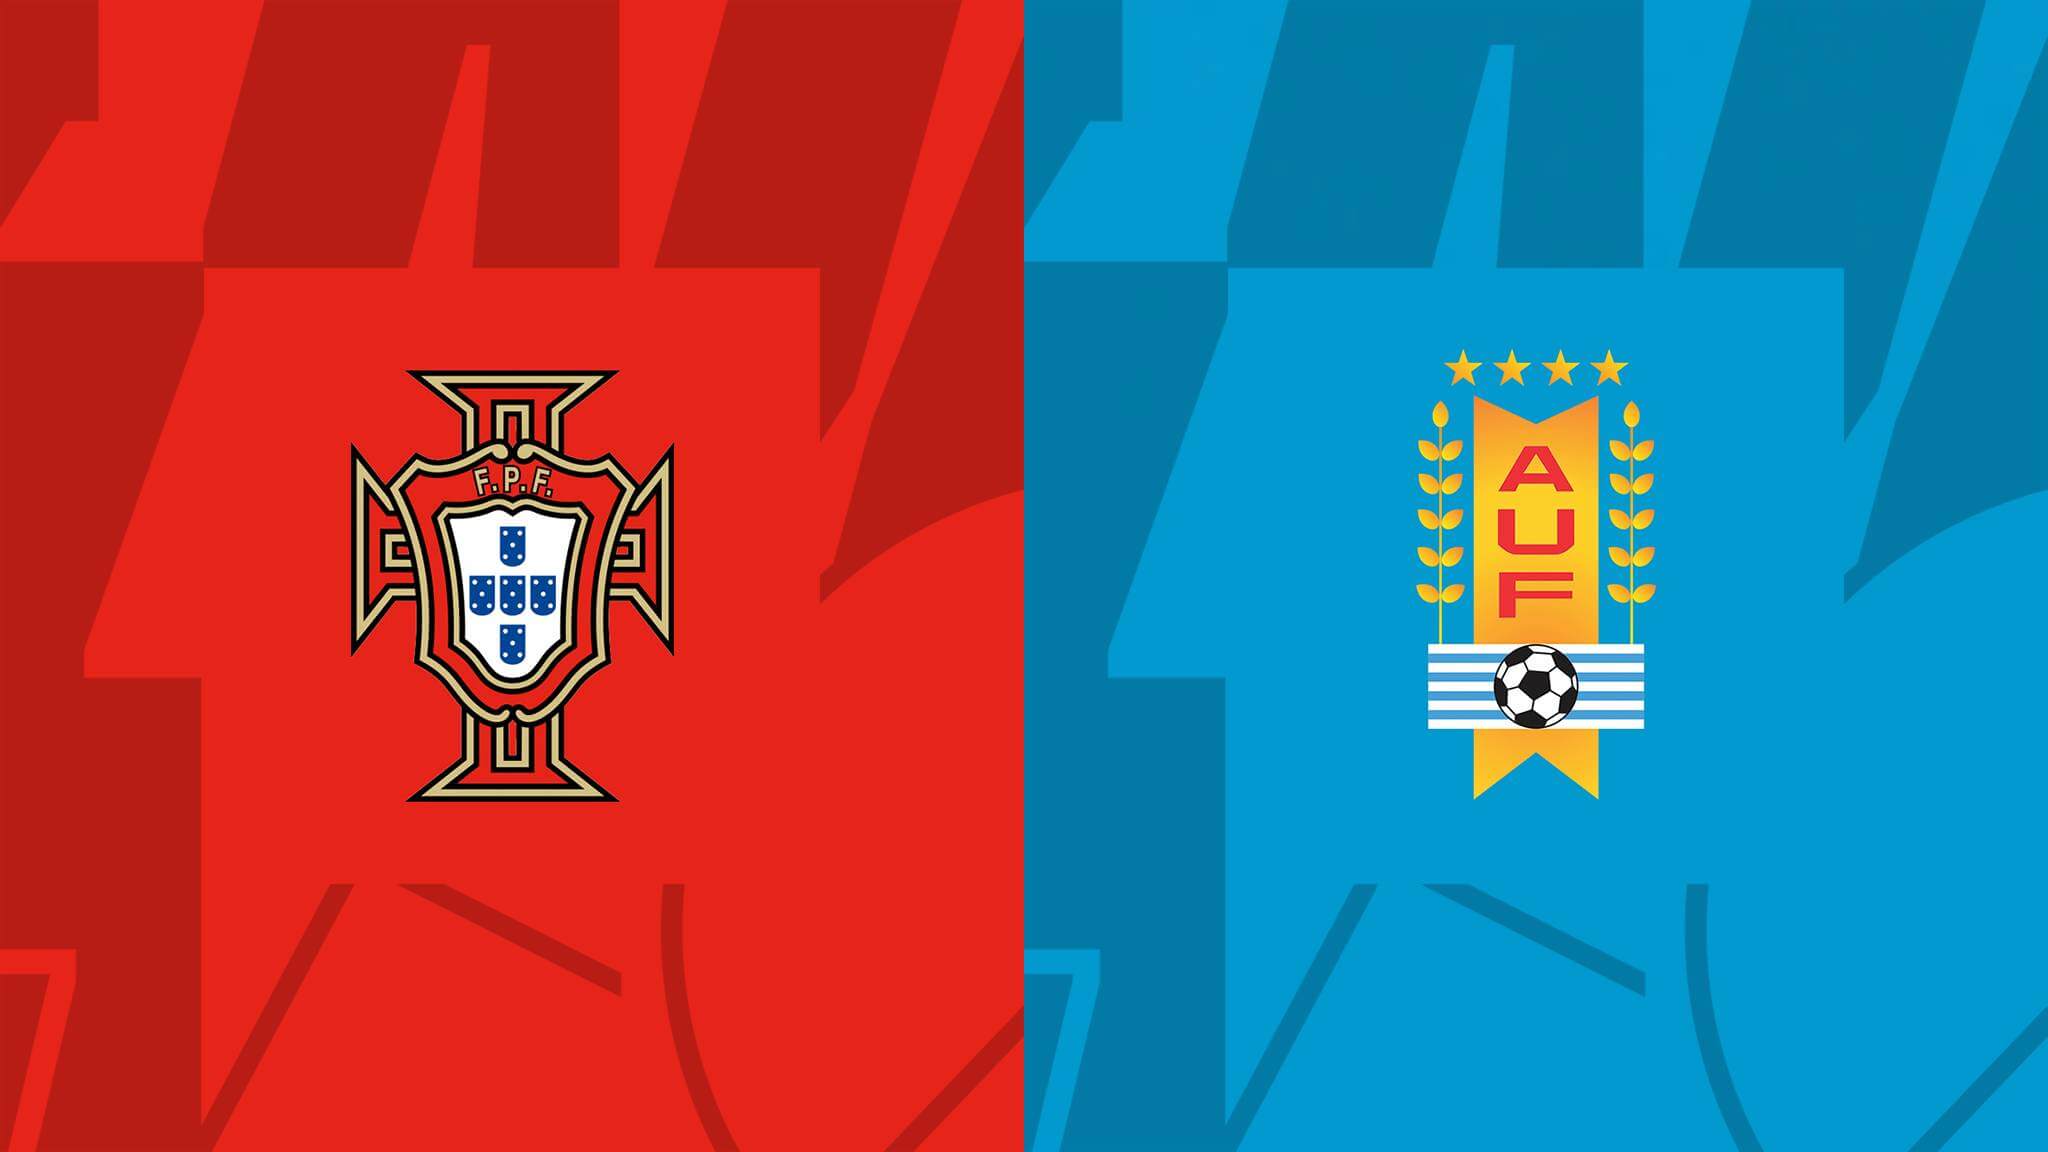 Prediksi Bola Portugal Vs Uruguay 29 November 2022